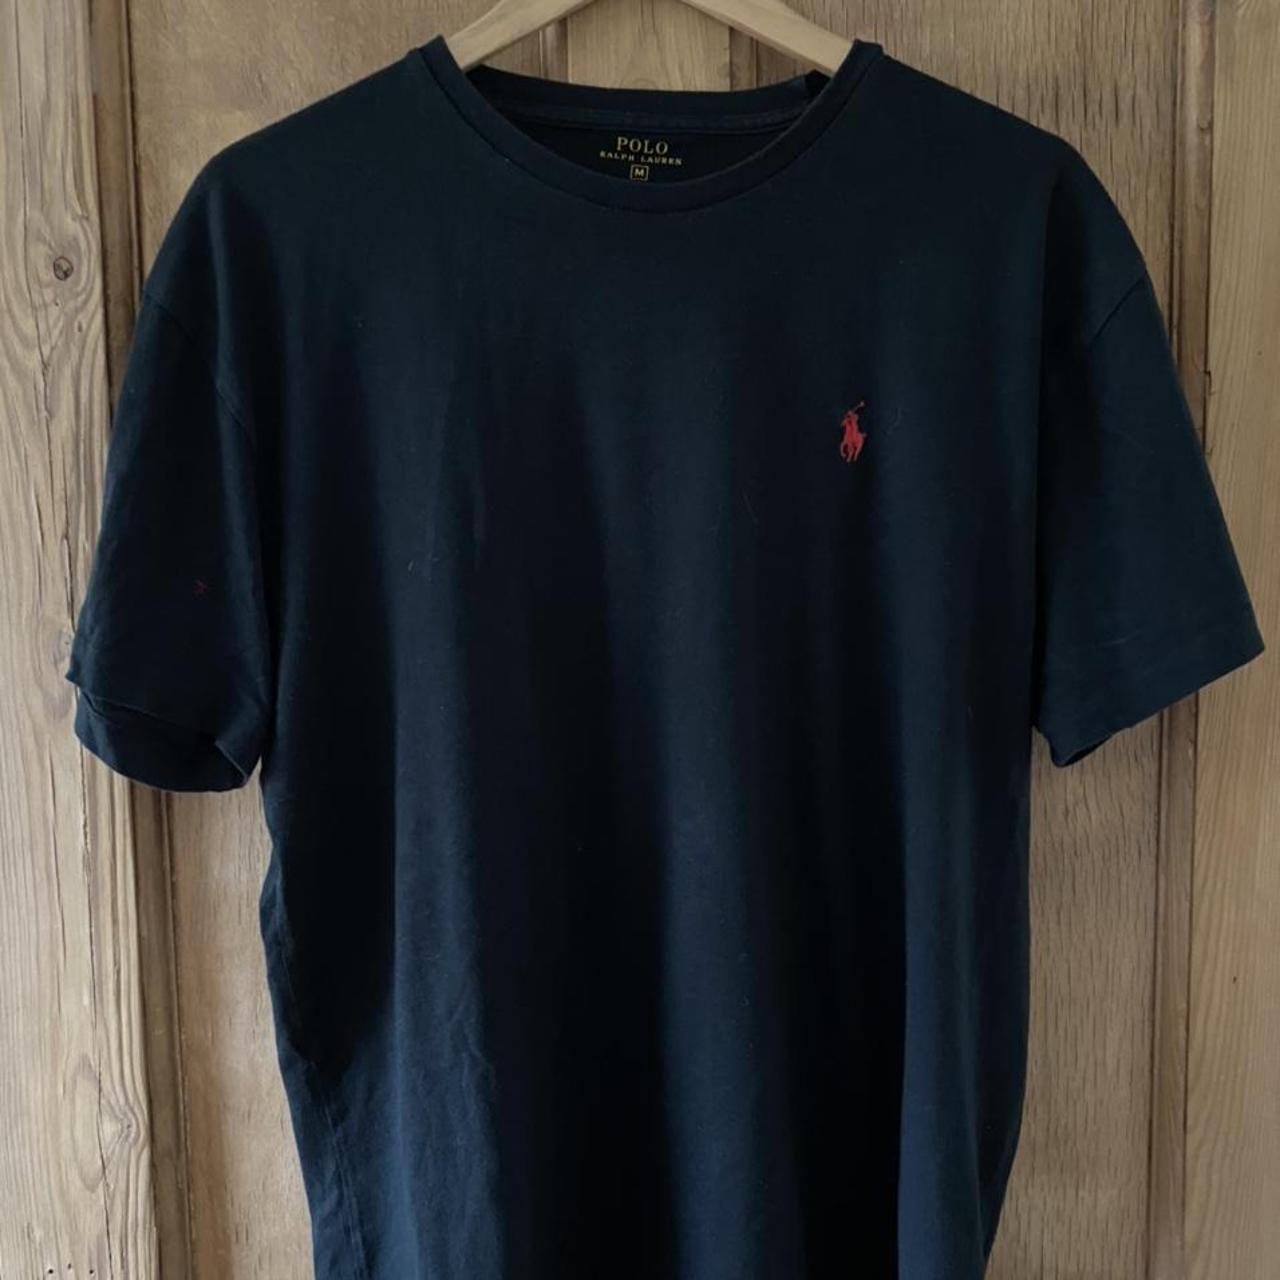 Black and Red Polo Ralph Lauren T Shirt size medium... - Depop